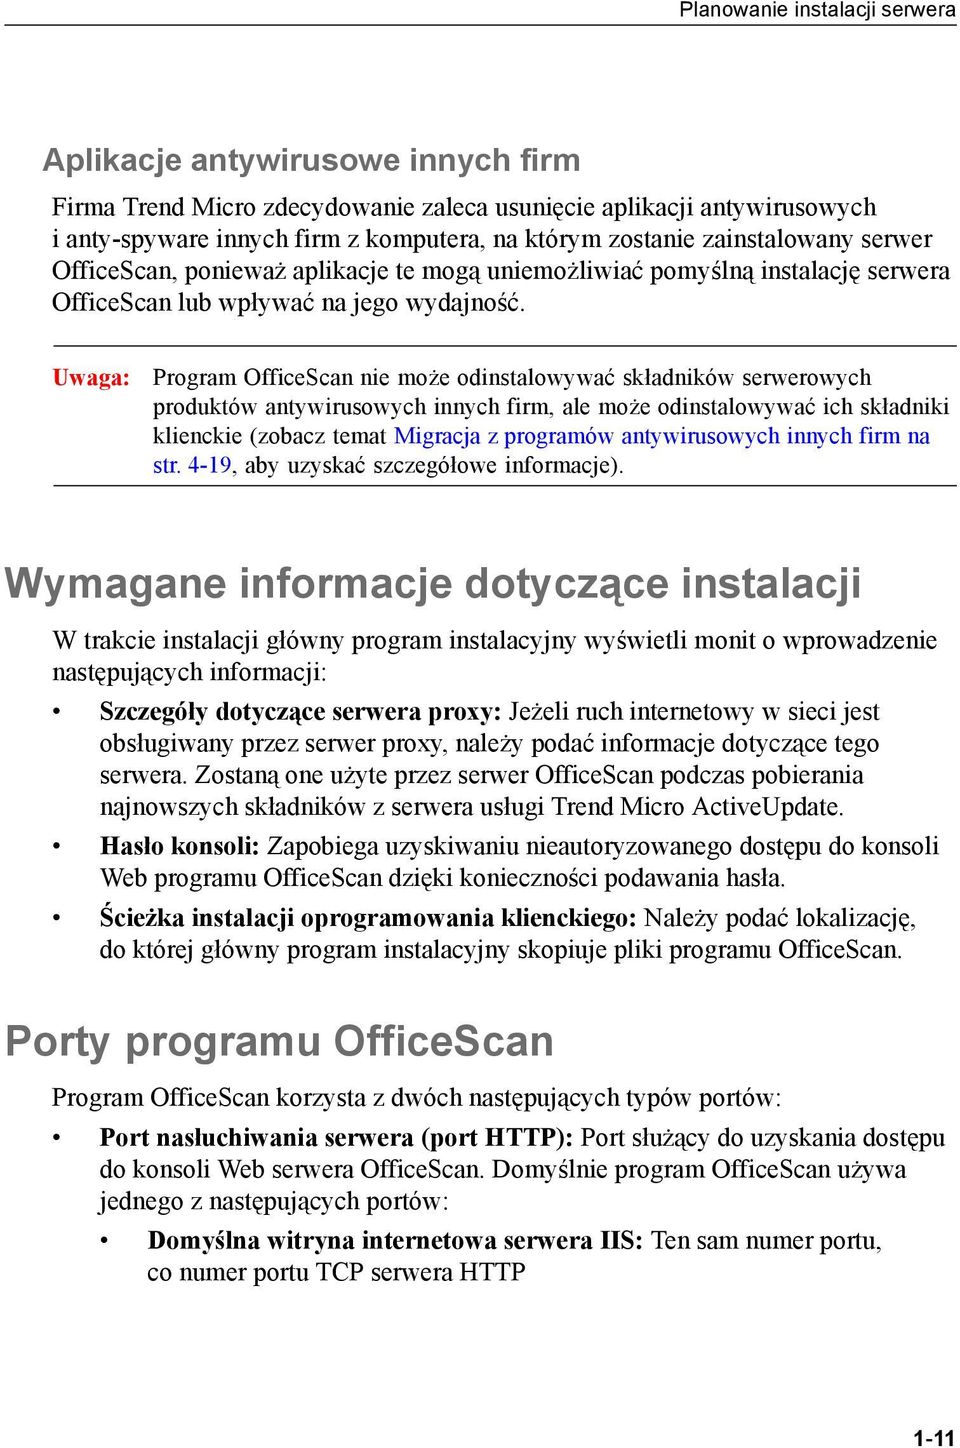 Uwaga: Program OfficeScan nie może odinstalowywać składników serwerowych produktów antywirusowych innych firm, ale może odinstalowywać ich składniki klienckie (zobacz temat Migracja z programów